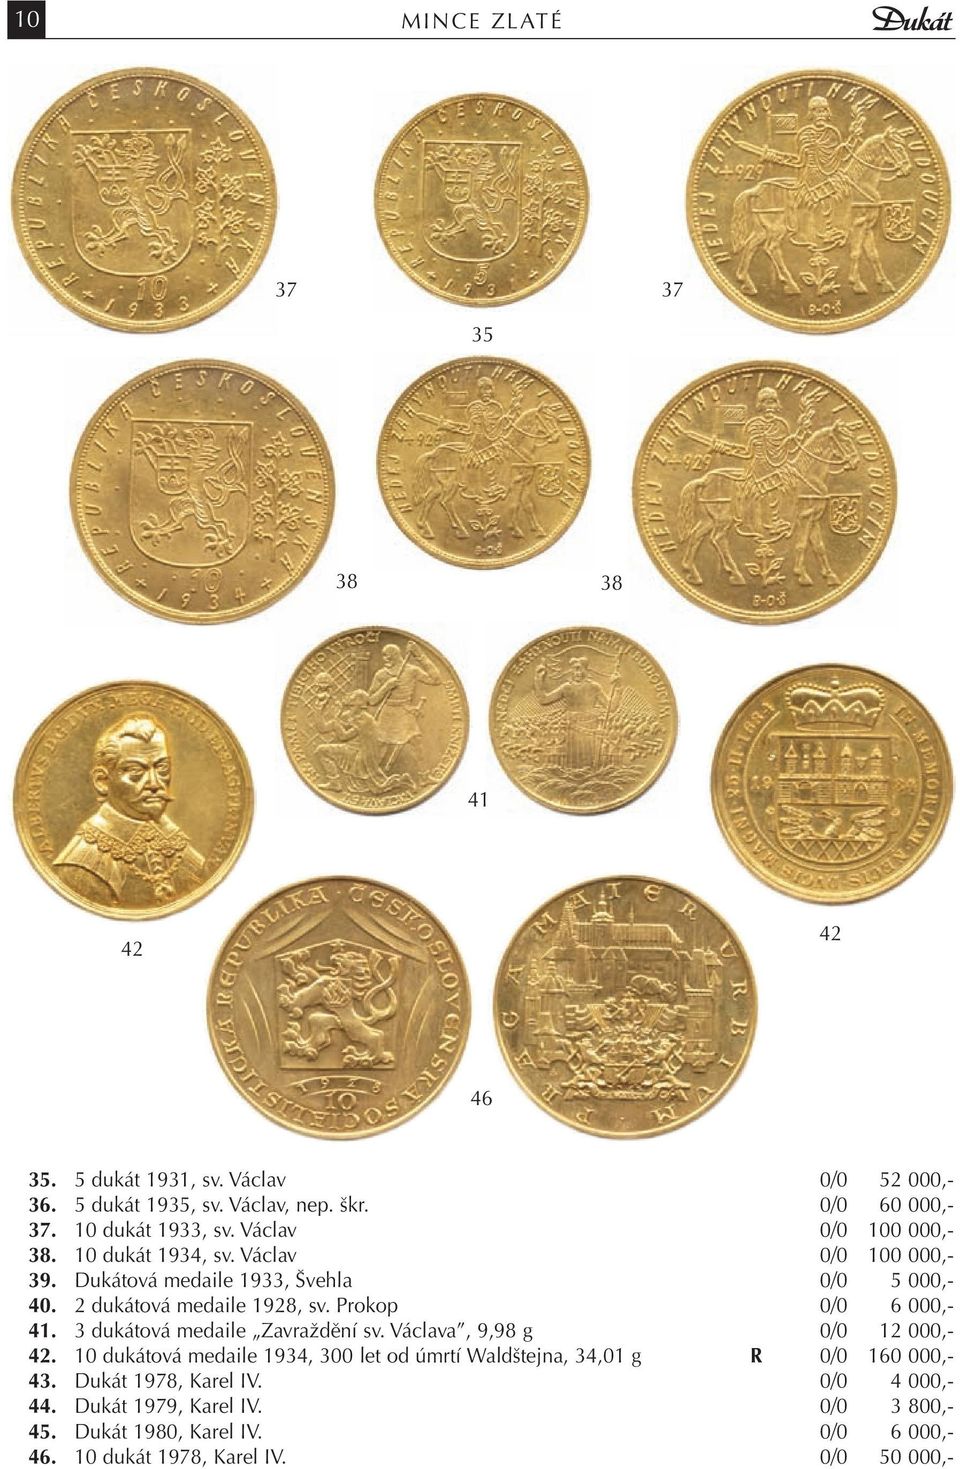 2 dukátová medaile 1928, sv. Prokop 0/0 6 000,- 41. 3 dukátová medaile Zavraždění sv. Václava, 9,98 g 0/0 12 000,- 42.